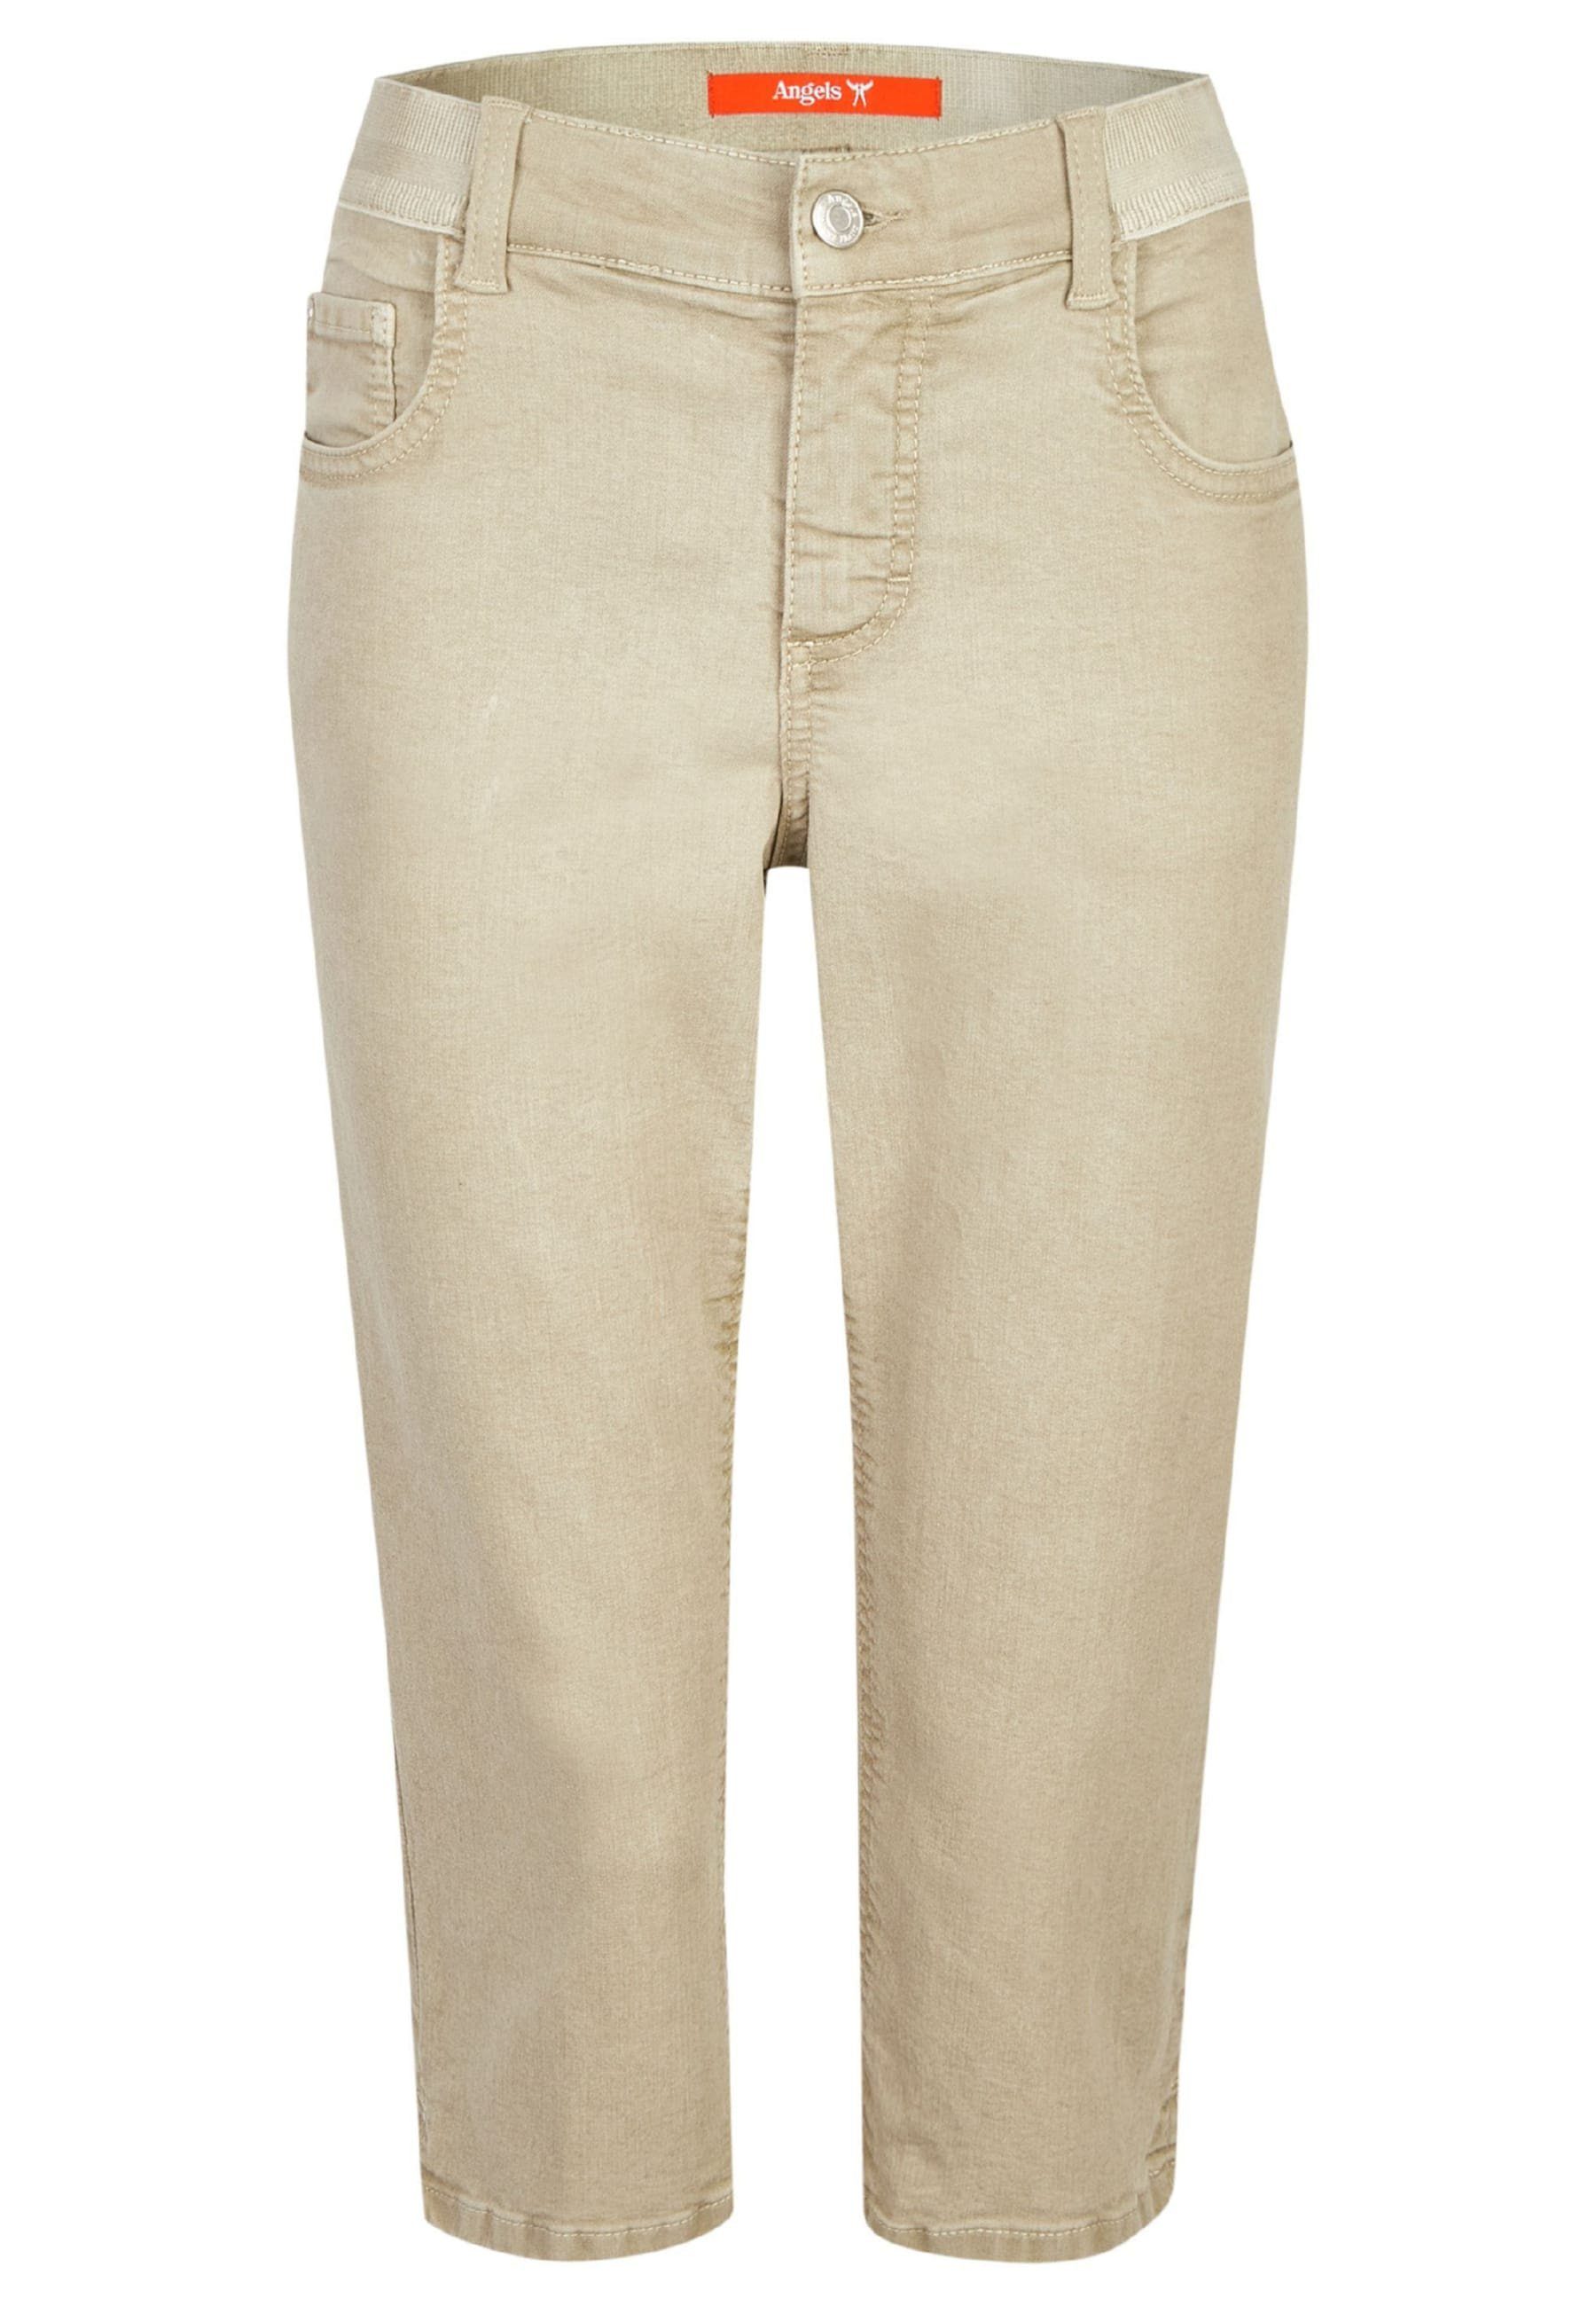 Denim mit Slim-fit-Jeans mit Coloured Label-Applikationen Capri ANGELS Jeans khaki OSFA